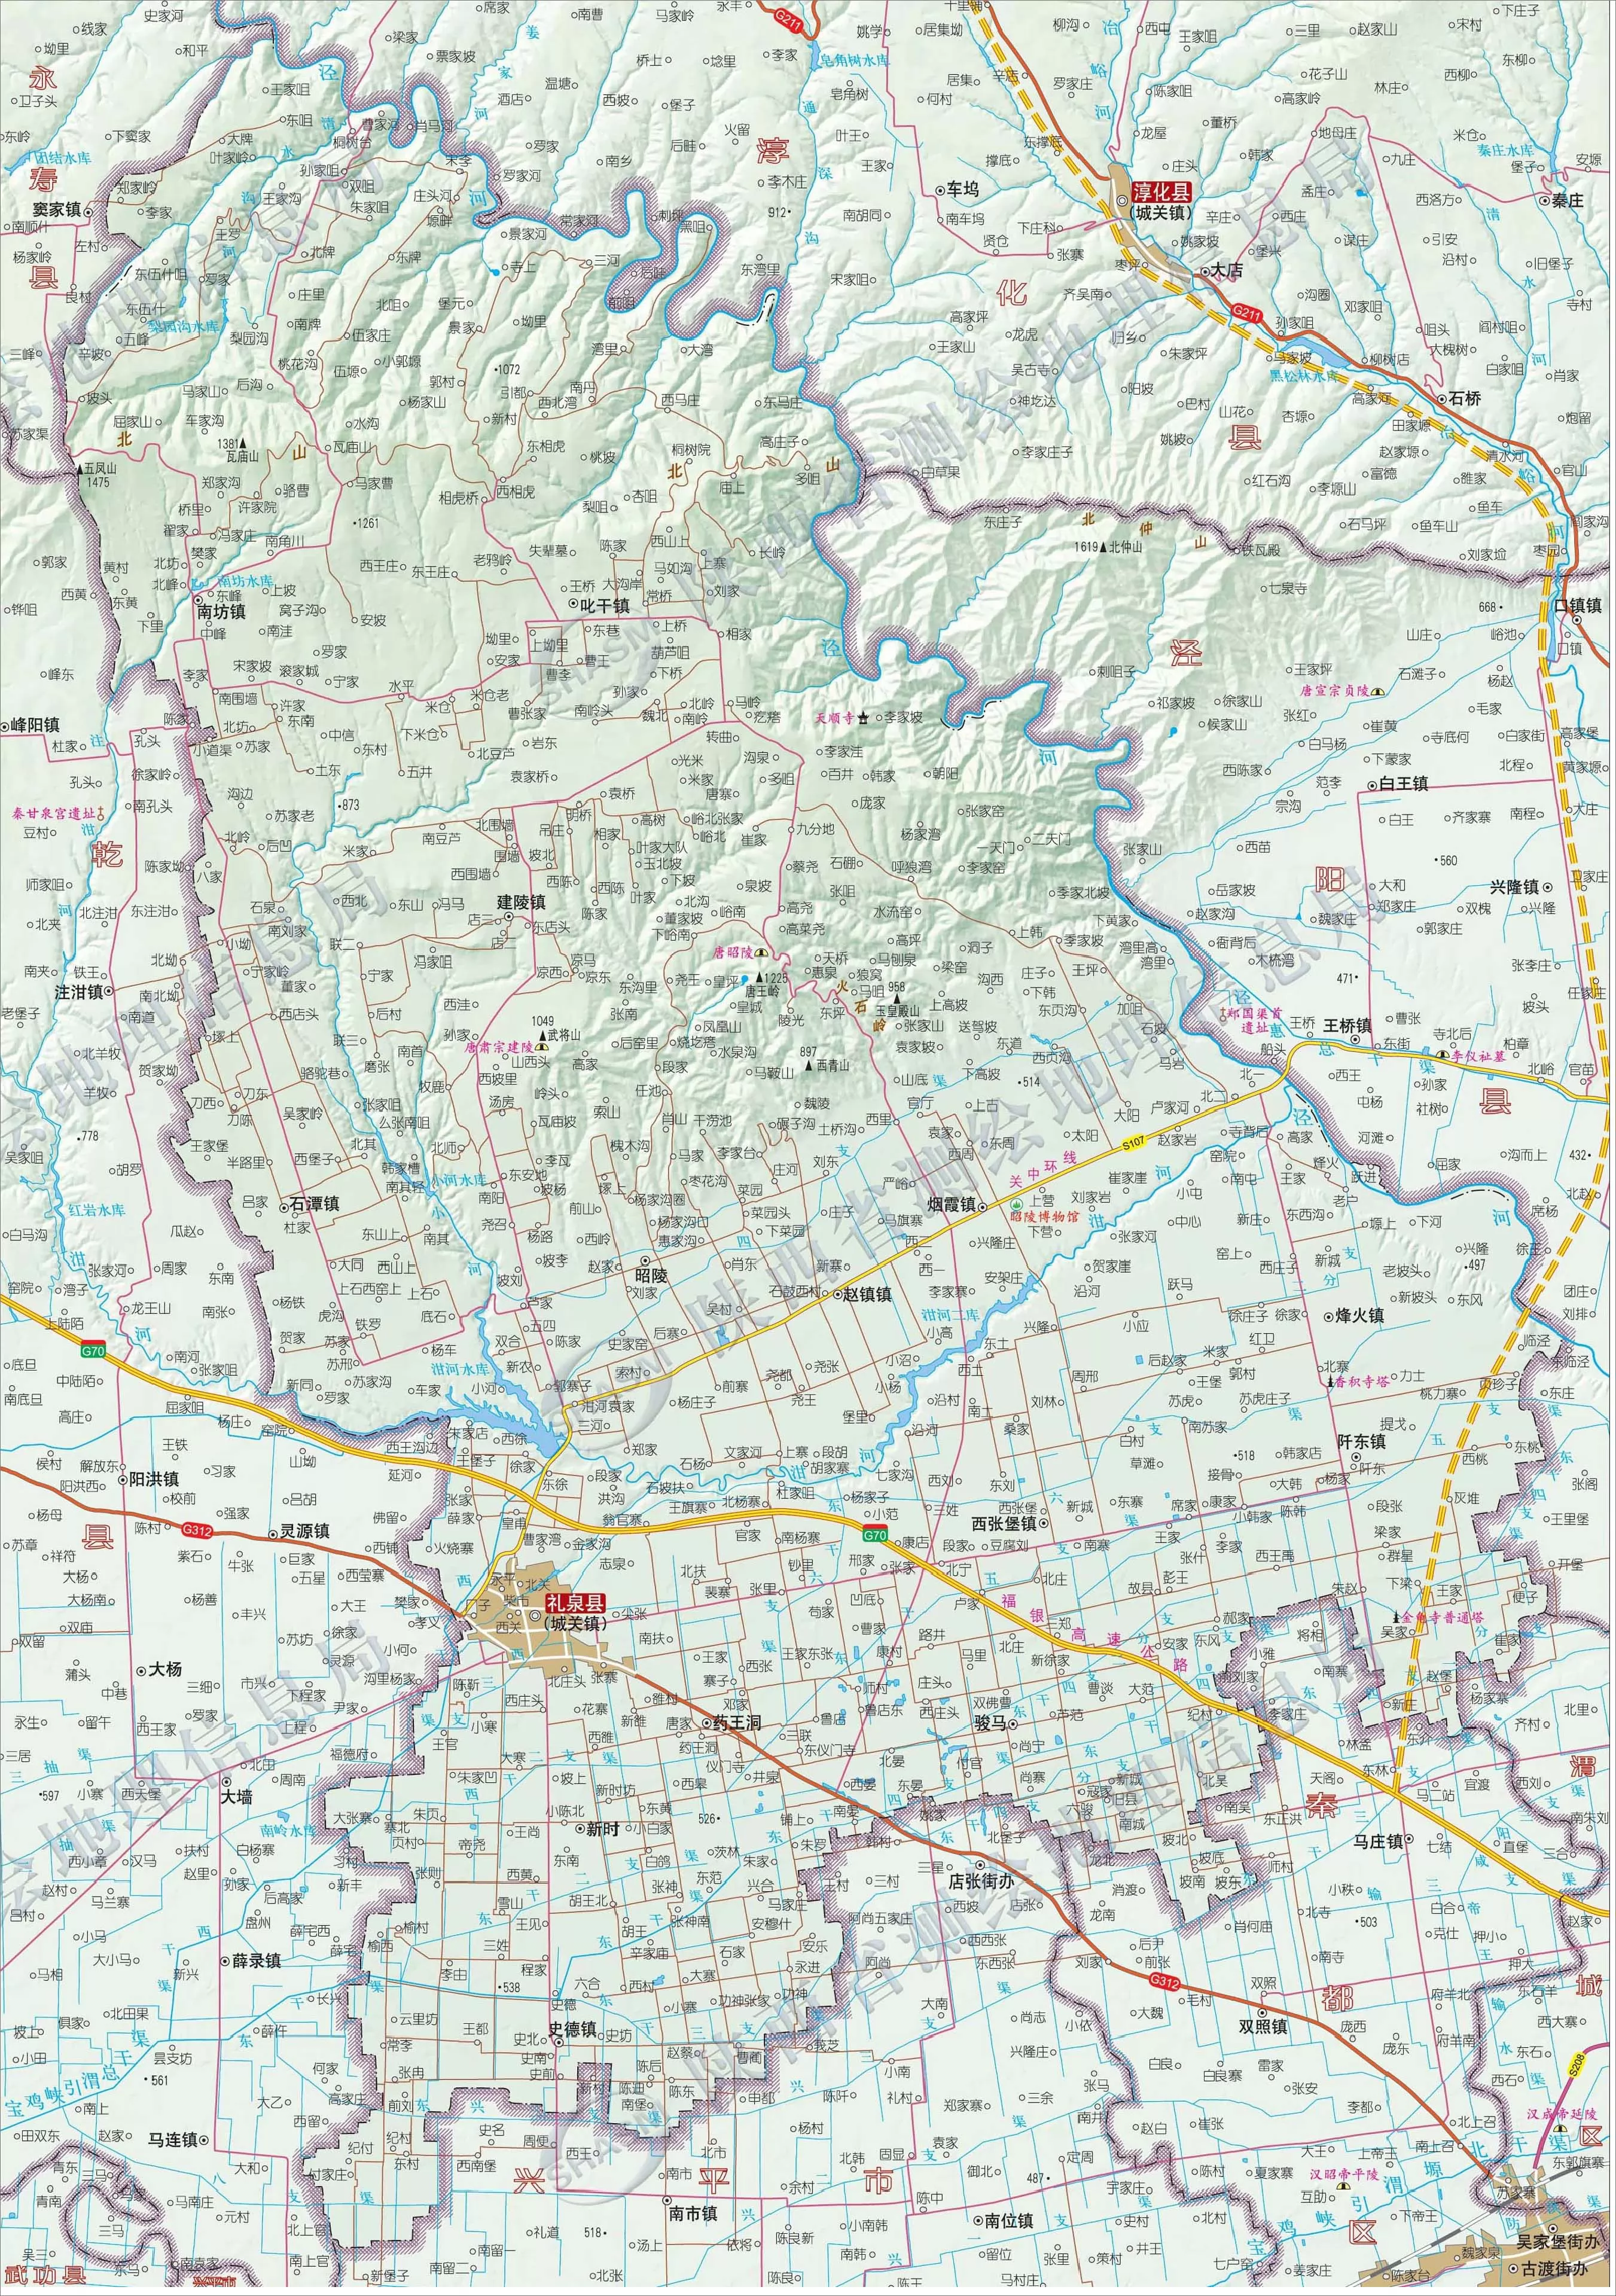 咸阳市礼泉县地图 - 中国地图全图 - 地理教师网